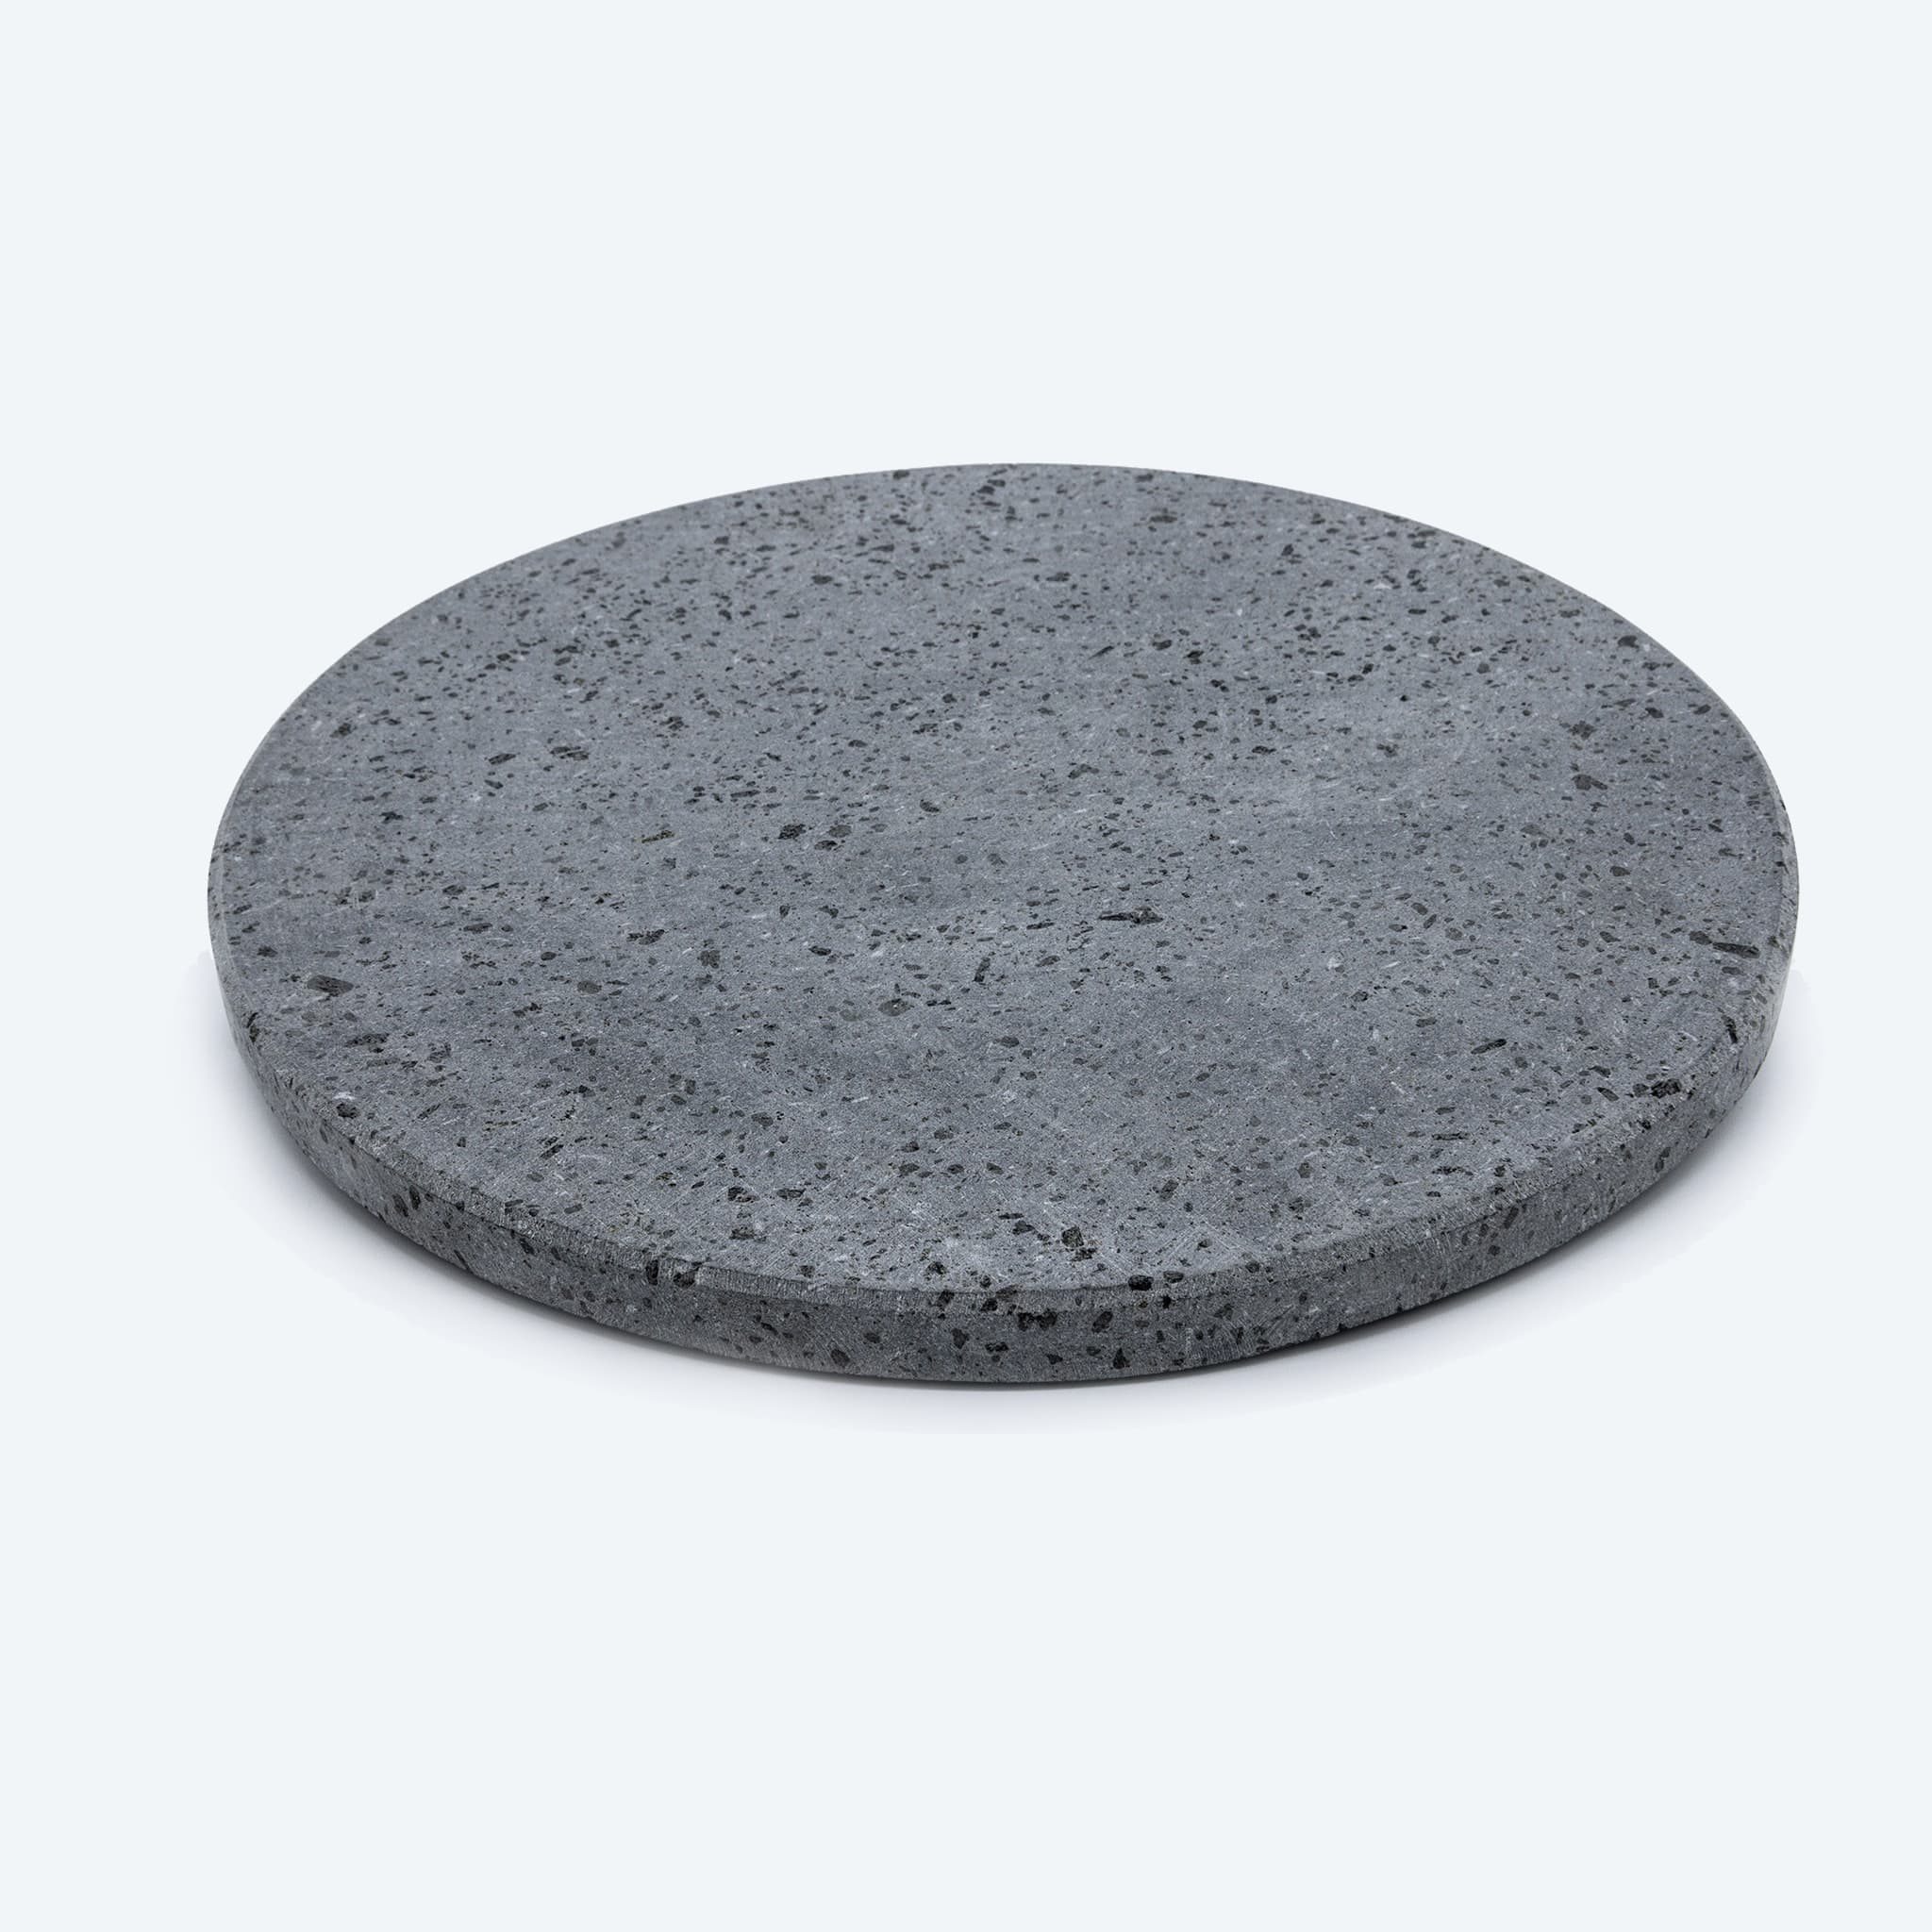 Feuerfeste Lavasteinplatte für runde Pizzen (Durchmesser 35 cm – Dicke 2 cm) (Kopie)